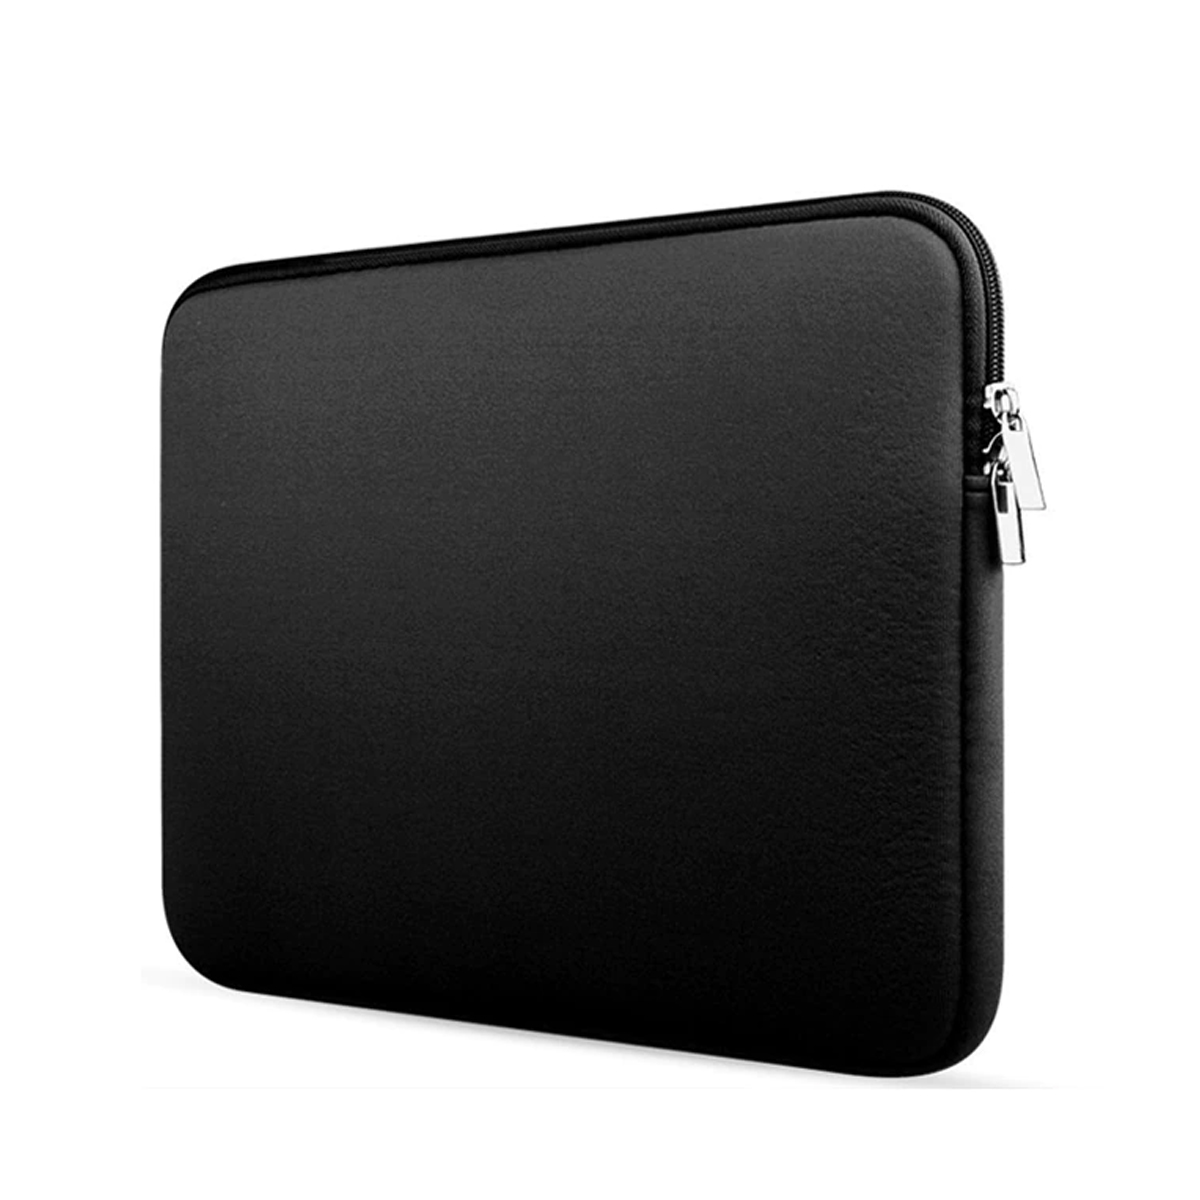 Van verzonden Uiterlijk Laptop en Macbook Sleeve - 11.6 inch - Zwart | Case2go.nl